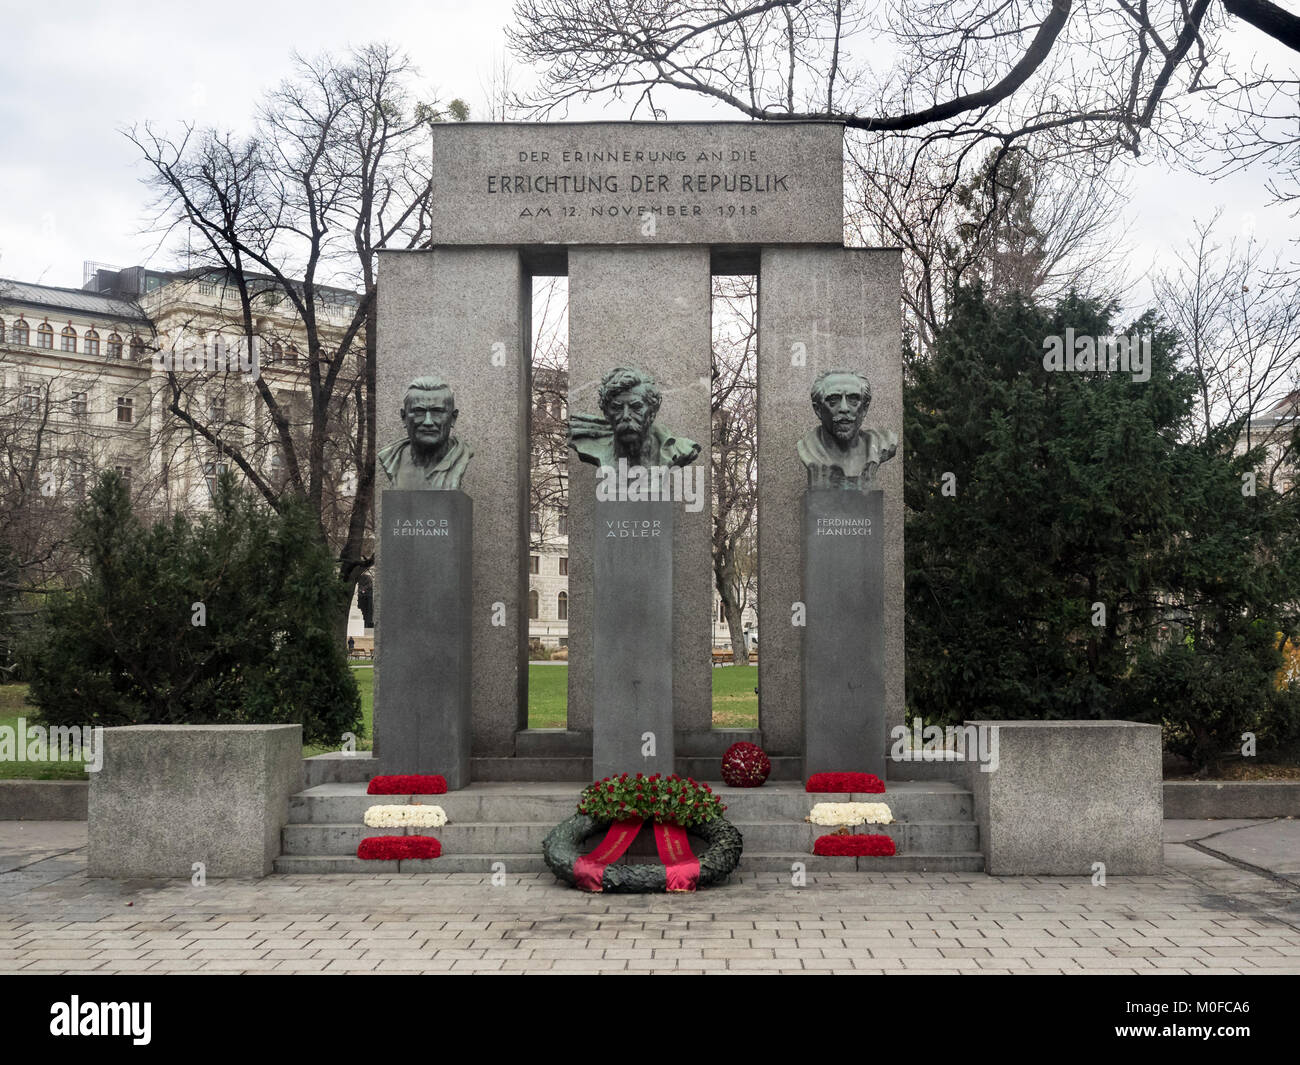 VIENA, AUSTRIA, 06 DE DICIEMBRE de 2017: Monumento de la República (Errichtung der Republik) Memorial poco después de la corona de colocación del aniversario Foto de stock